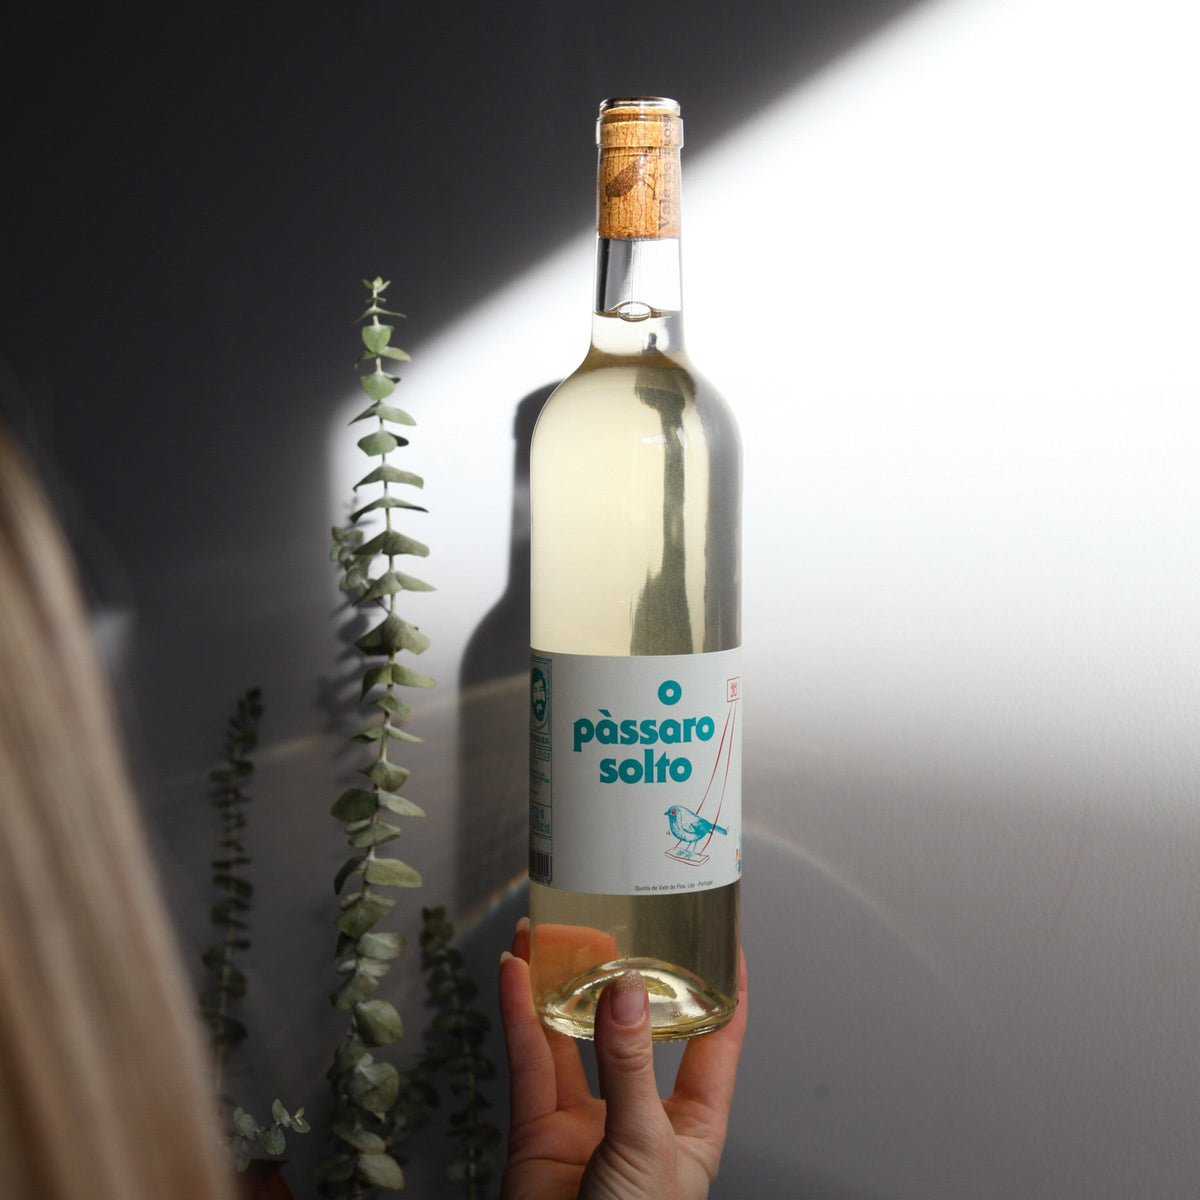 Bouteille de vin blanc biologique du domaine Vale de Pios au Portugal: O passaro solto branco.